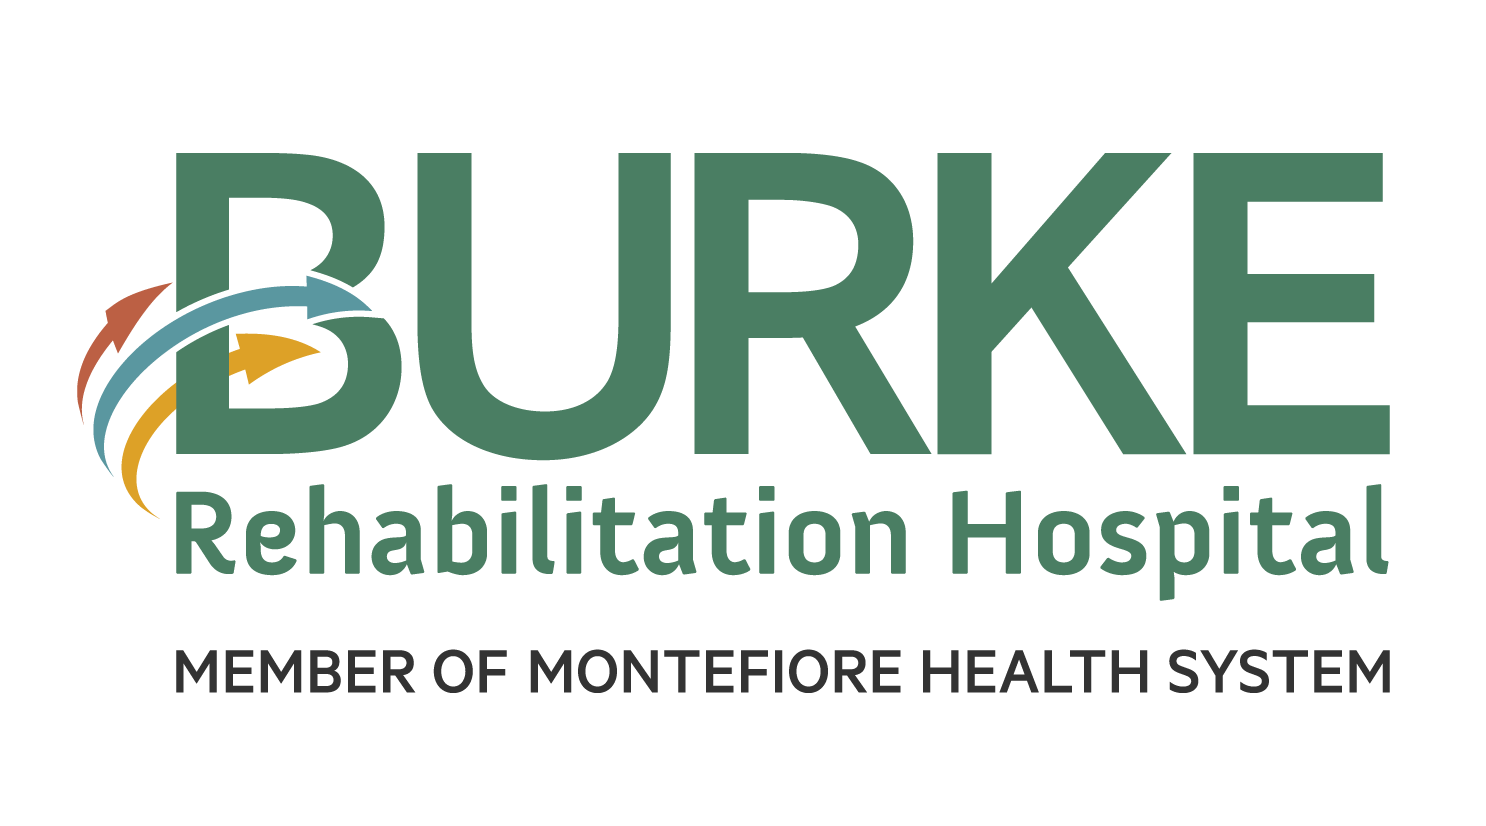 Rehabilitation Logo - Burke Branding Guide - Burke Rehabilitation Hospital